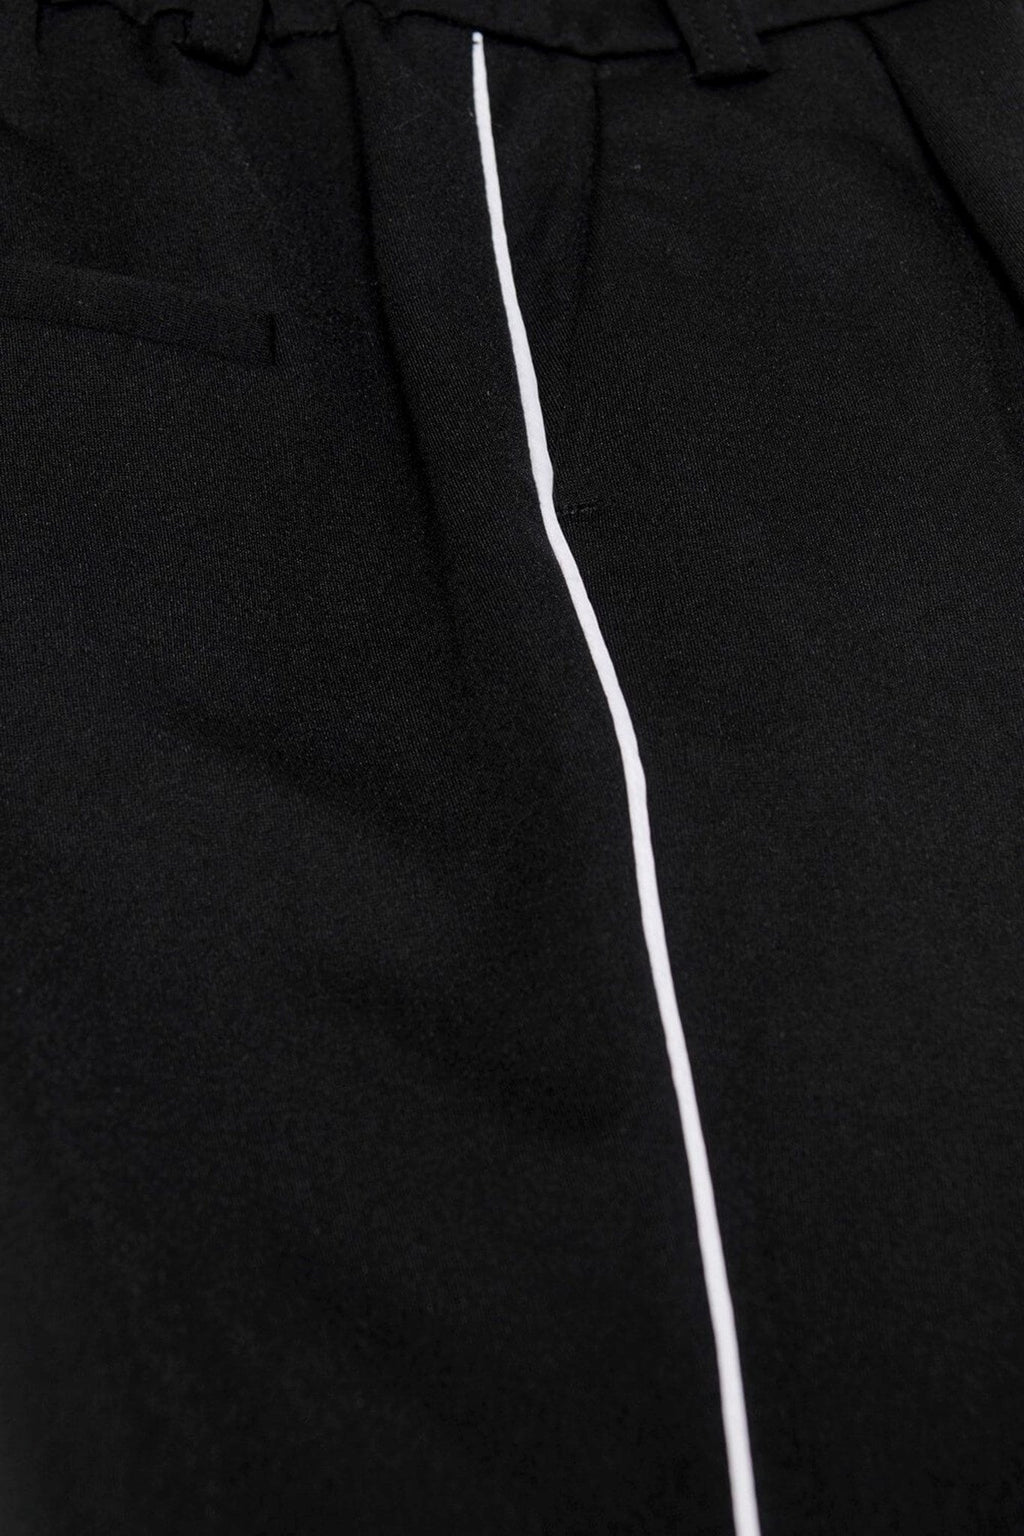 Poptrash hlače (djeca) - crne s bijelom prugom